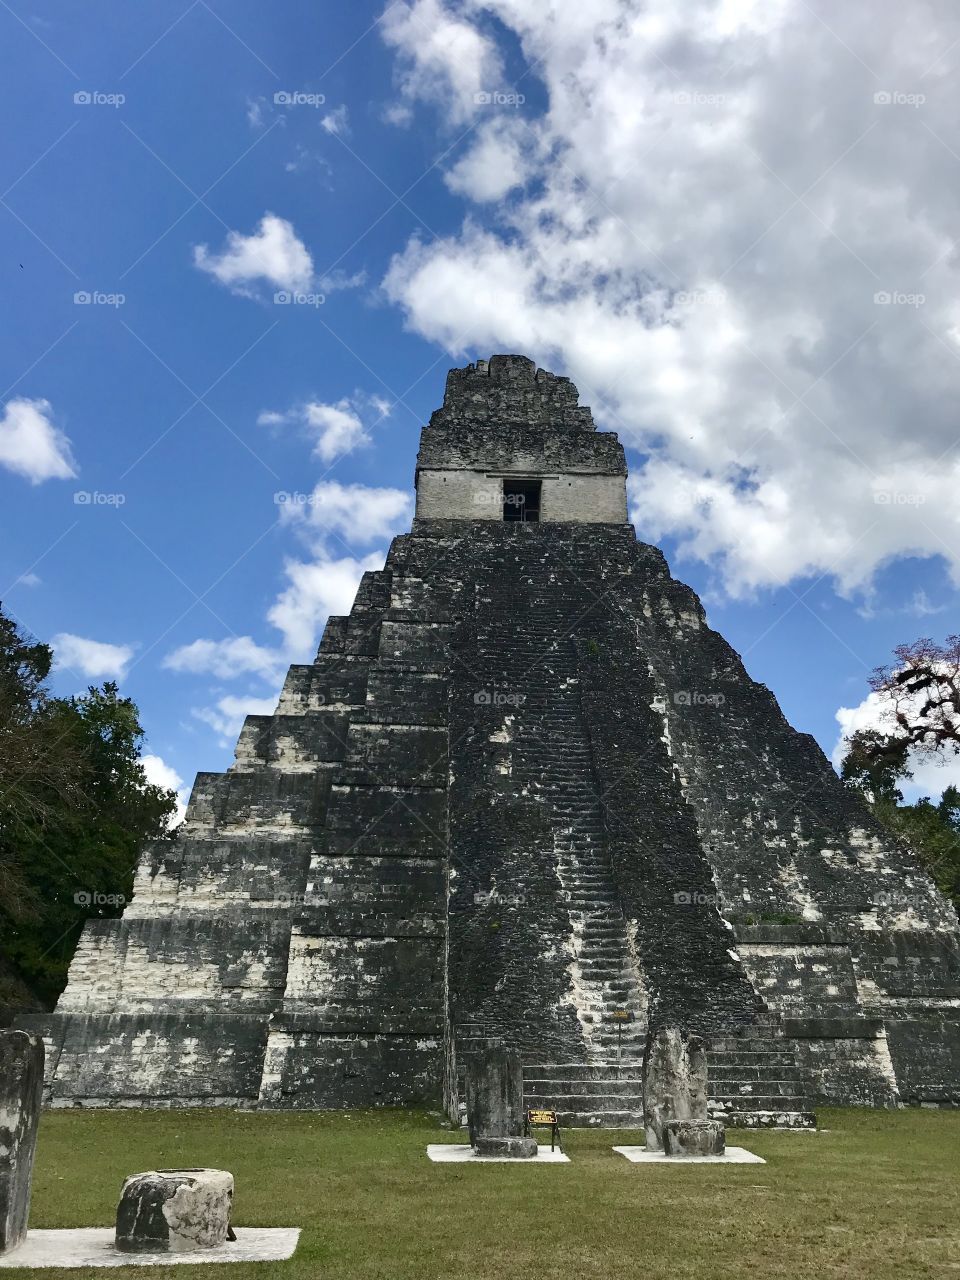 Sacred Mayan Temple in Guatemala